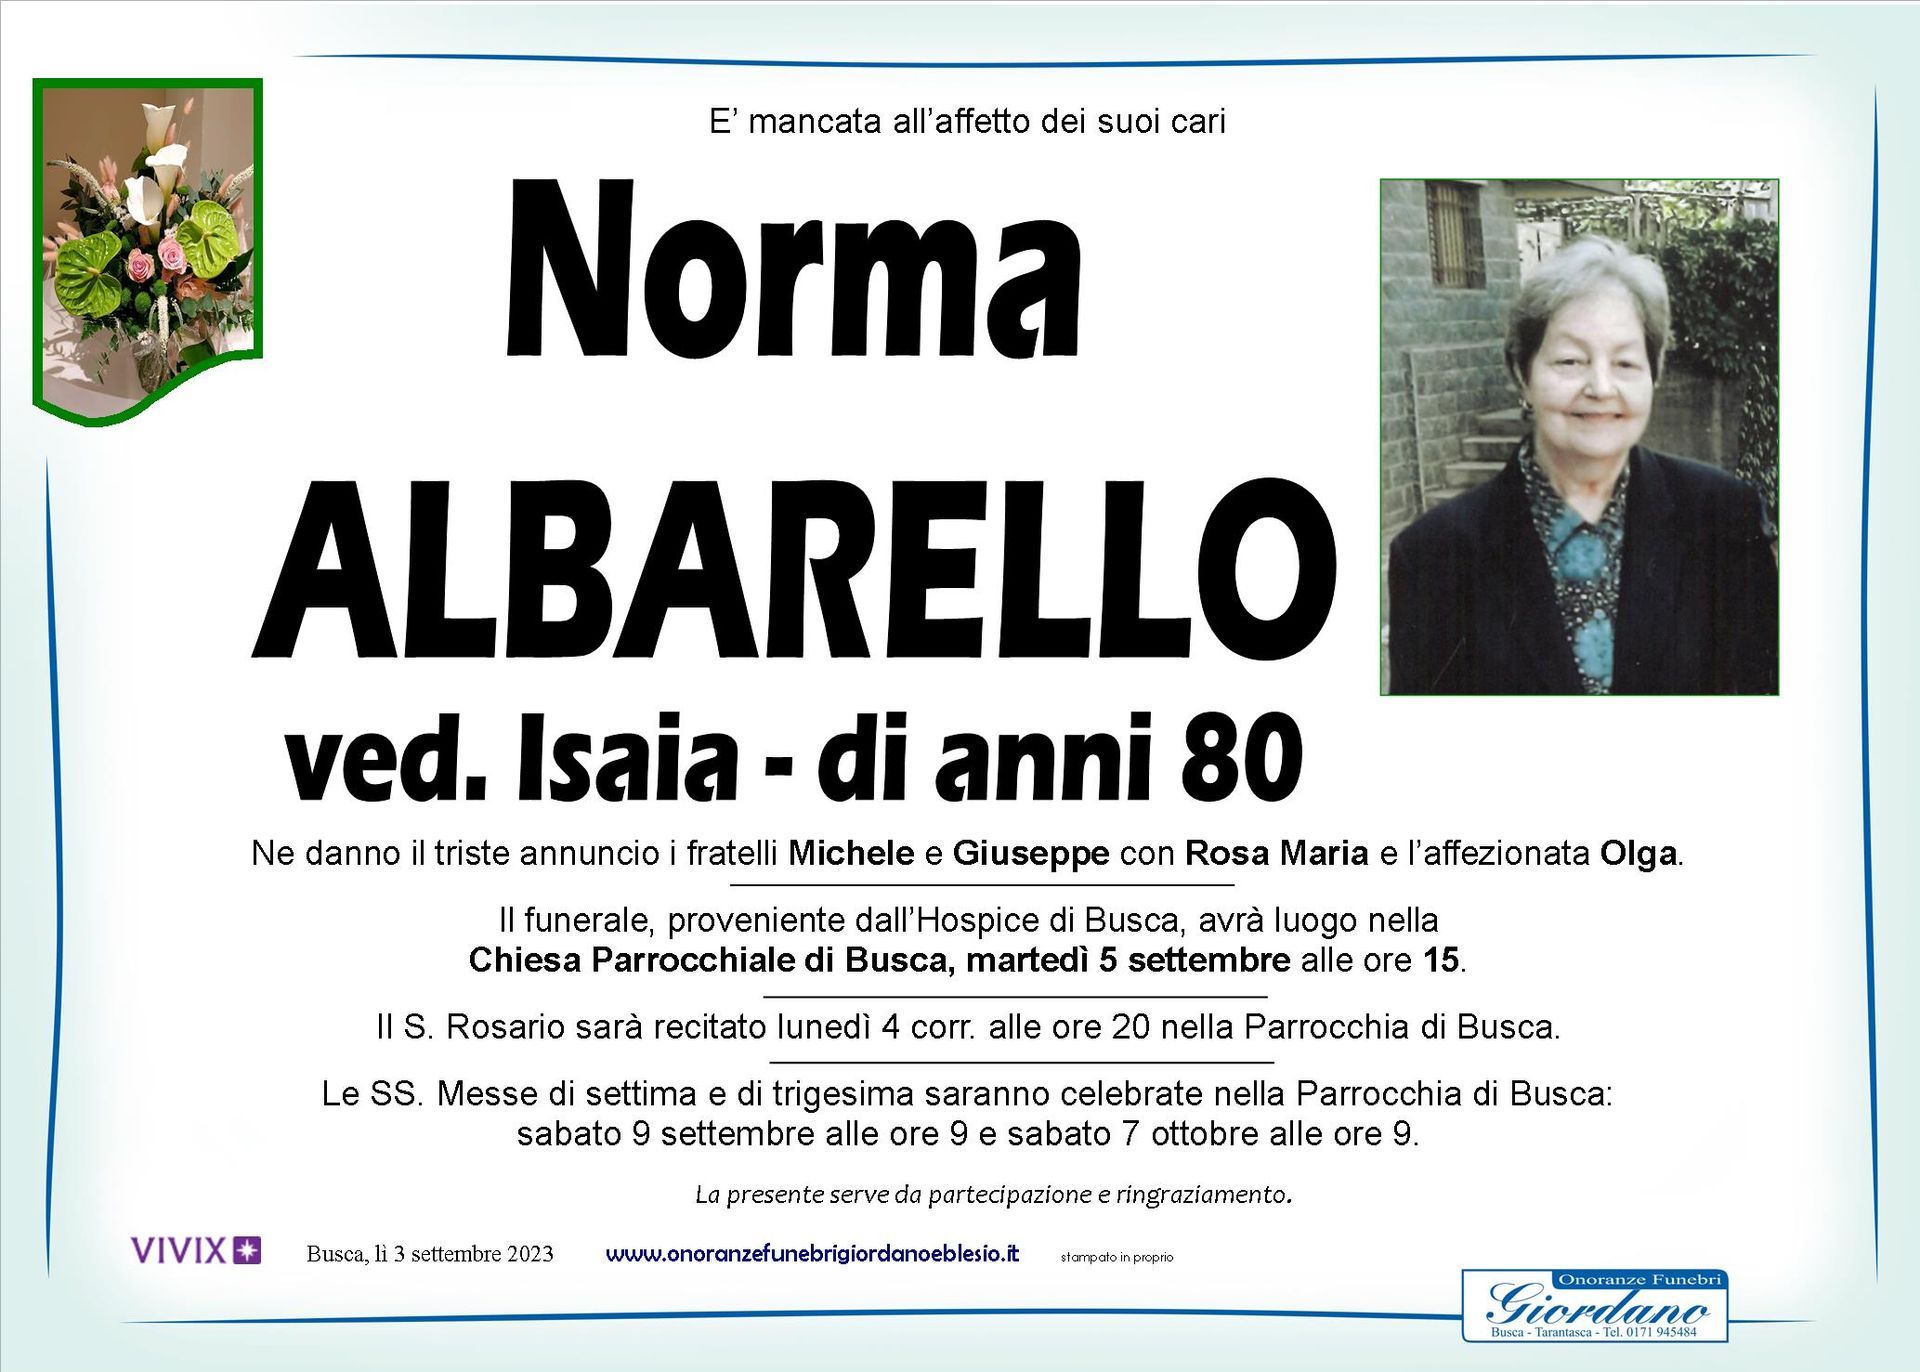 necrologio ALBARELLO Norma ved. Isaia